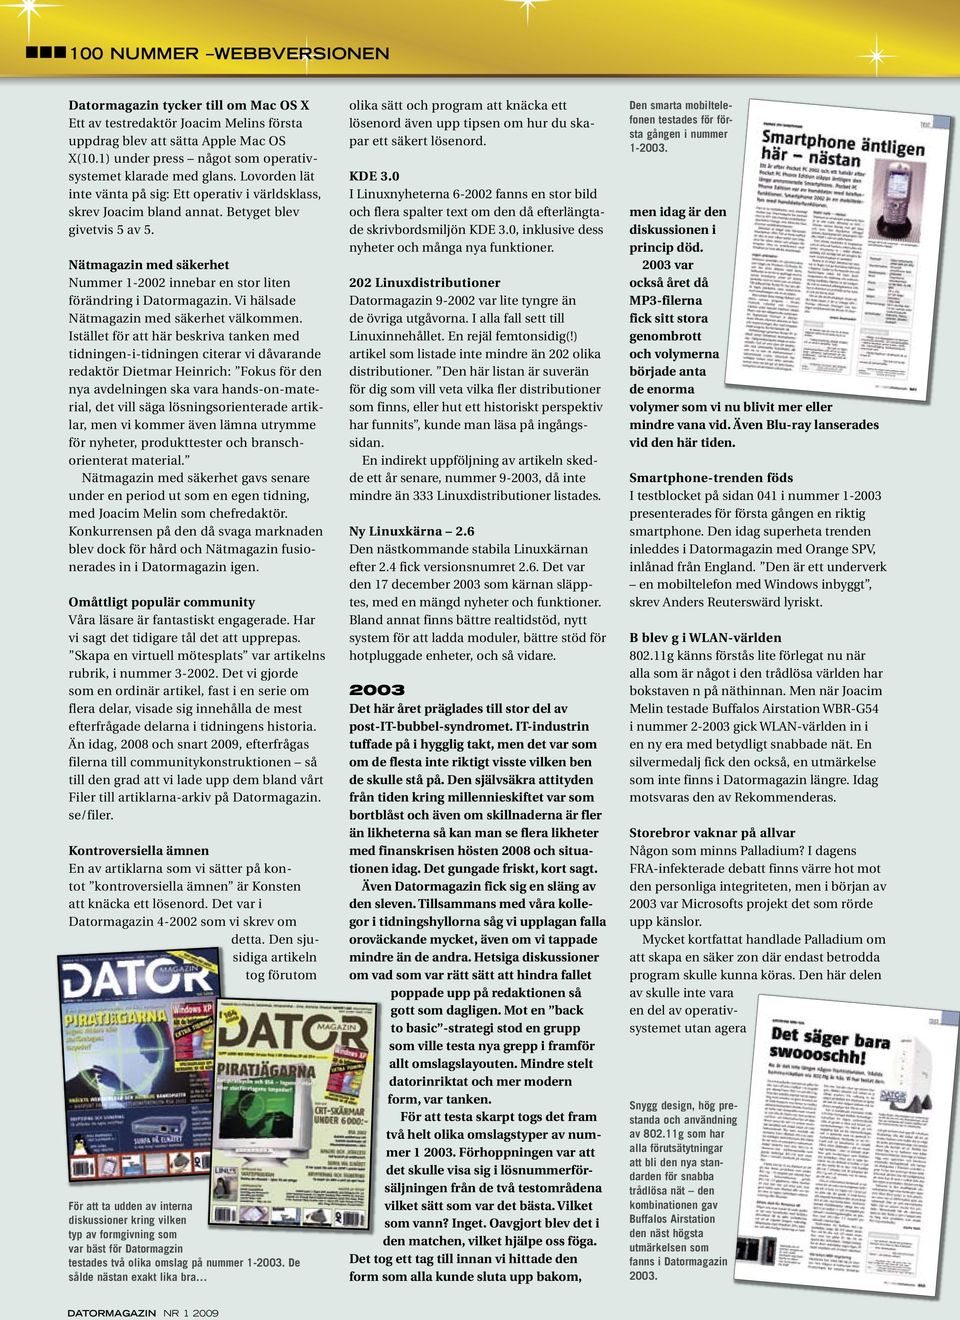 Nätmagazin med säkerhet Nummer 1-2002 innebar en stor liten förändring i Datormagazin. Vi hälsade Nätmagazin med säkerhet välkommen.